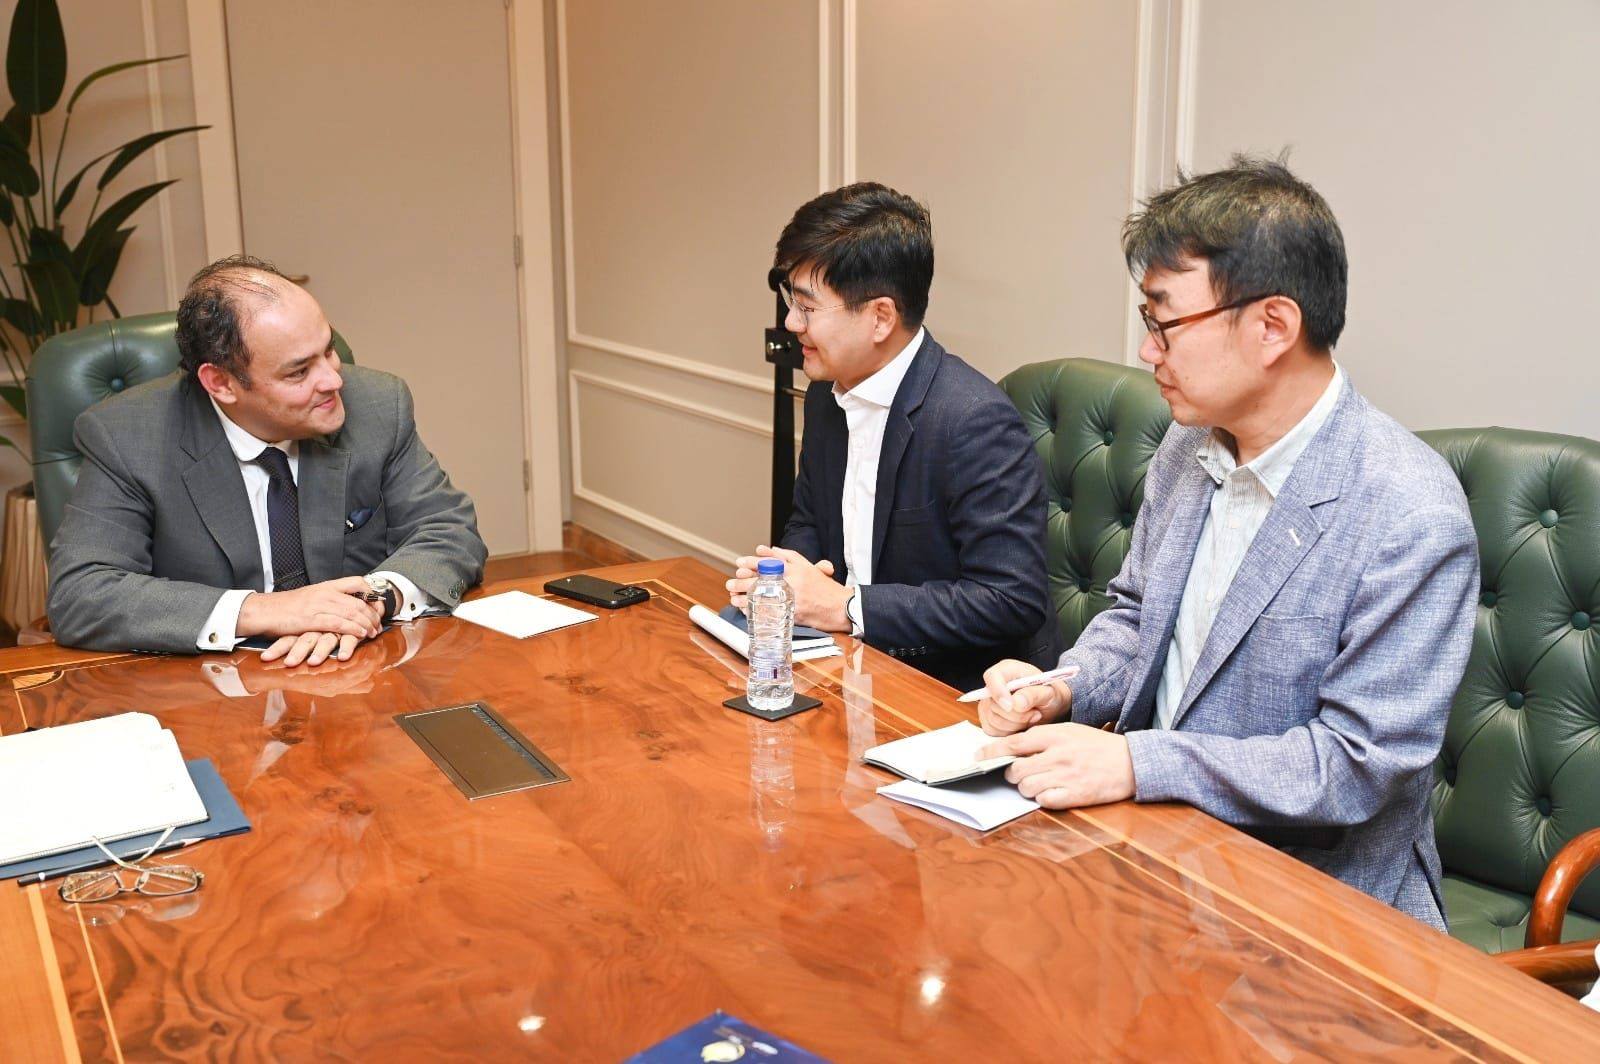 جون سو جونج رئيس مجلس إدارة شركة سامسونج مصر مع أحمد سمير وزير الصناعة والتجارة